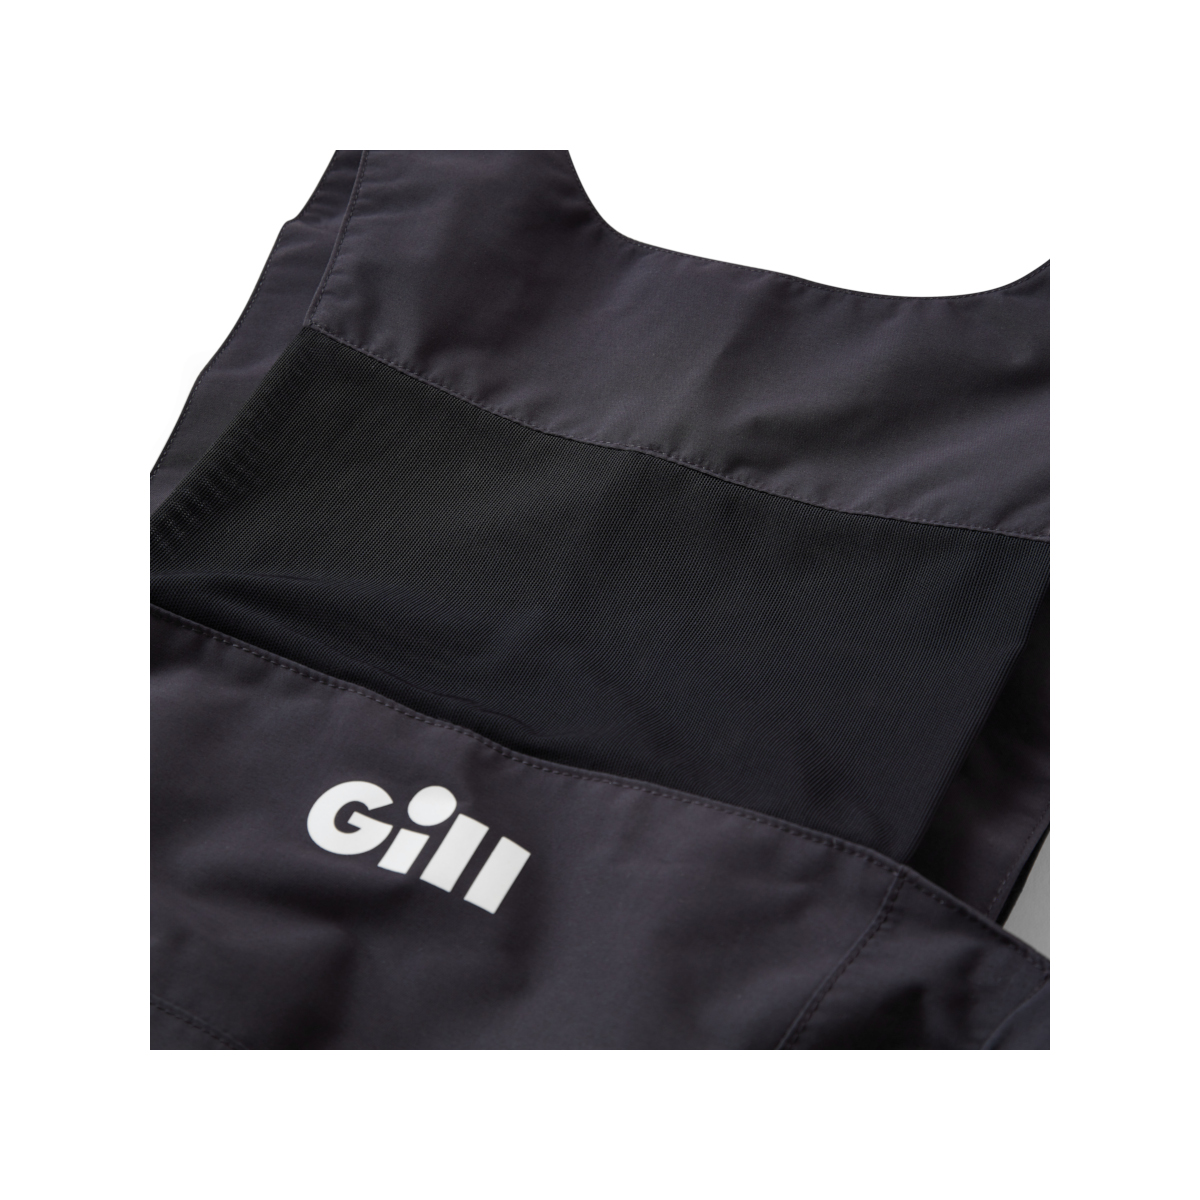 Gill OS25 Offshore salopette de quart, homme - graphite, taille XL